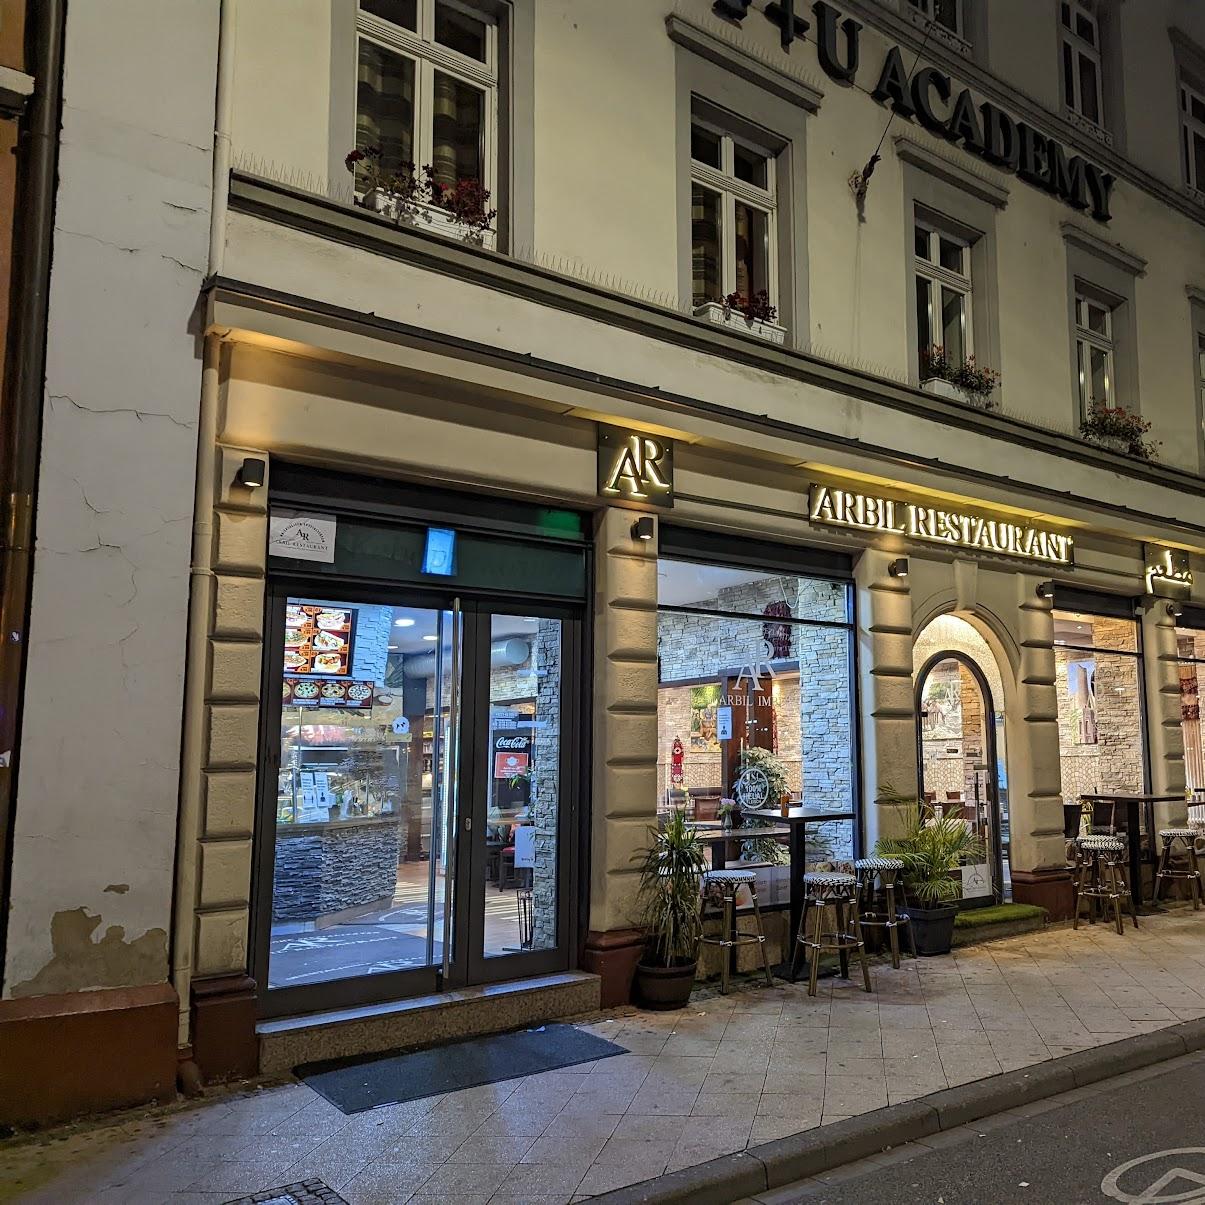 Restaurant "Restaurant Arbil Döner Imbiss" in Heidelberg